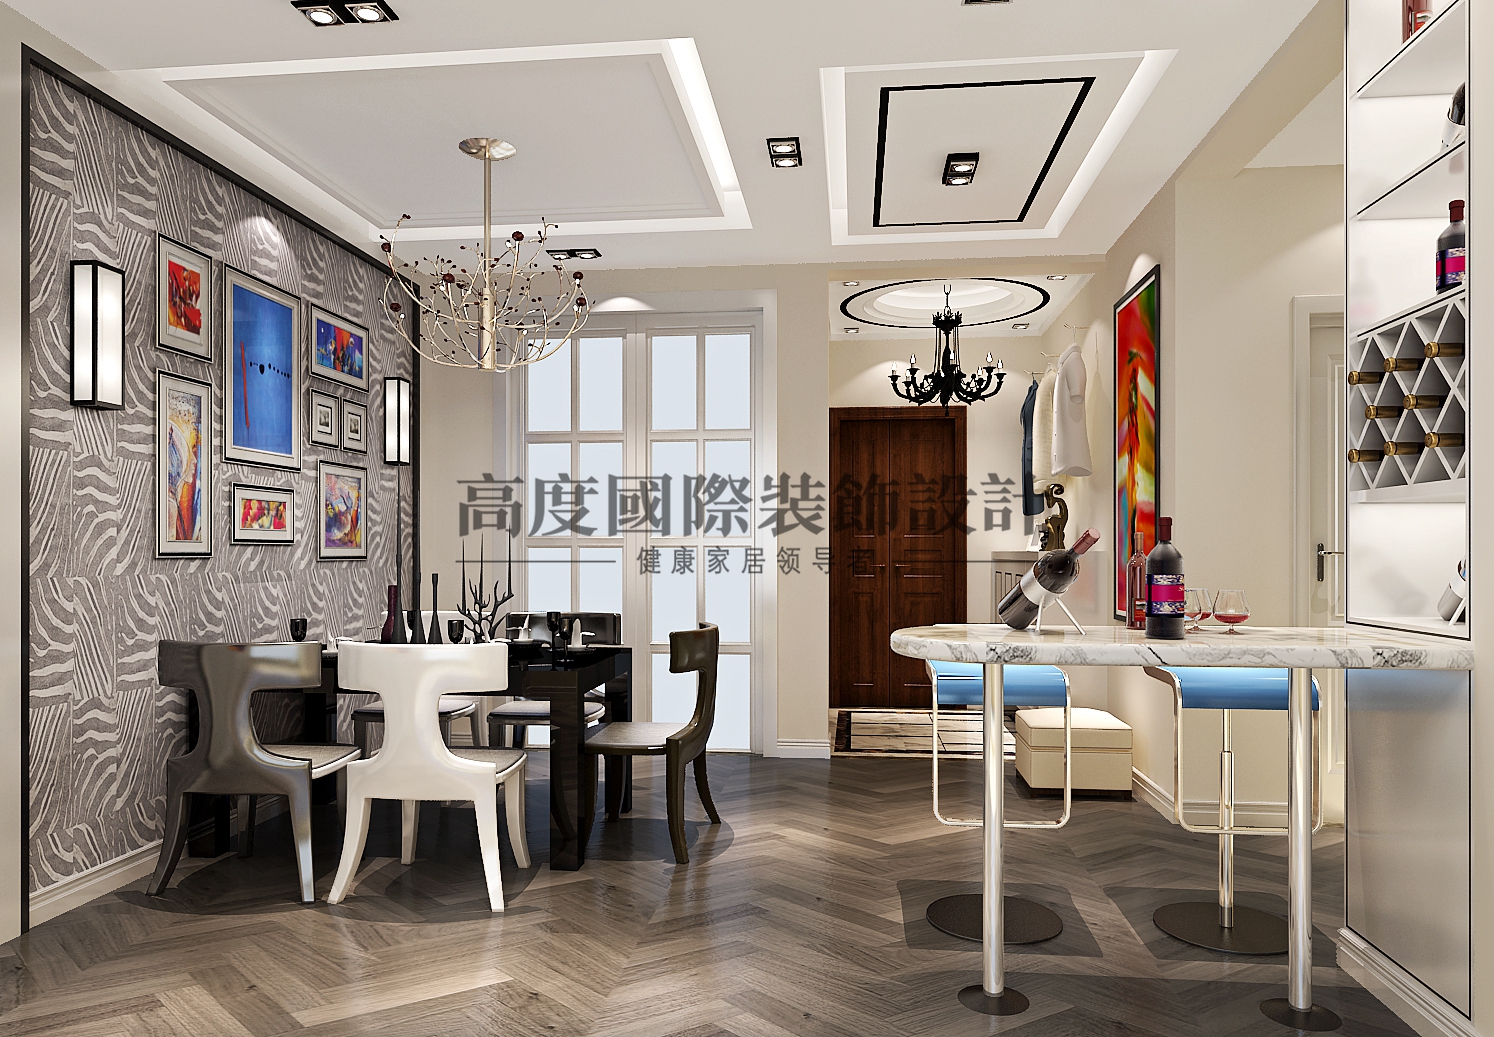 中海城南华 电梯公寓 餐厅图片来自bfsdbfd在现代风格-的分享